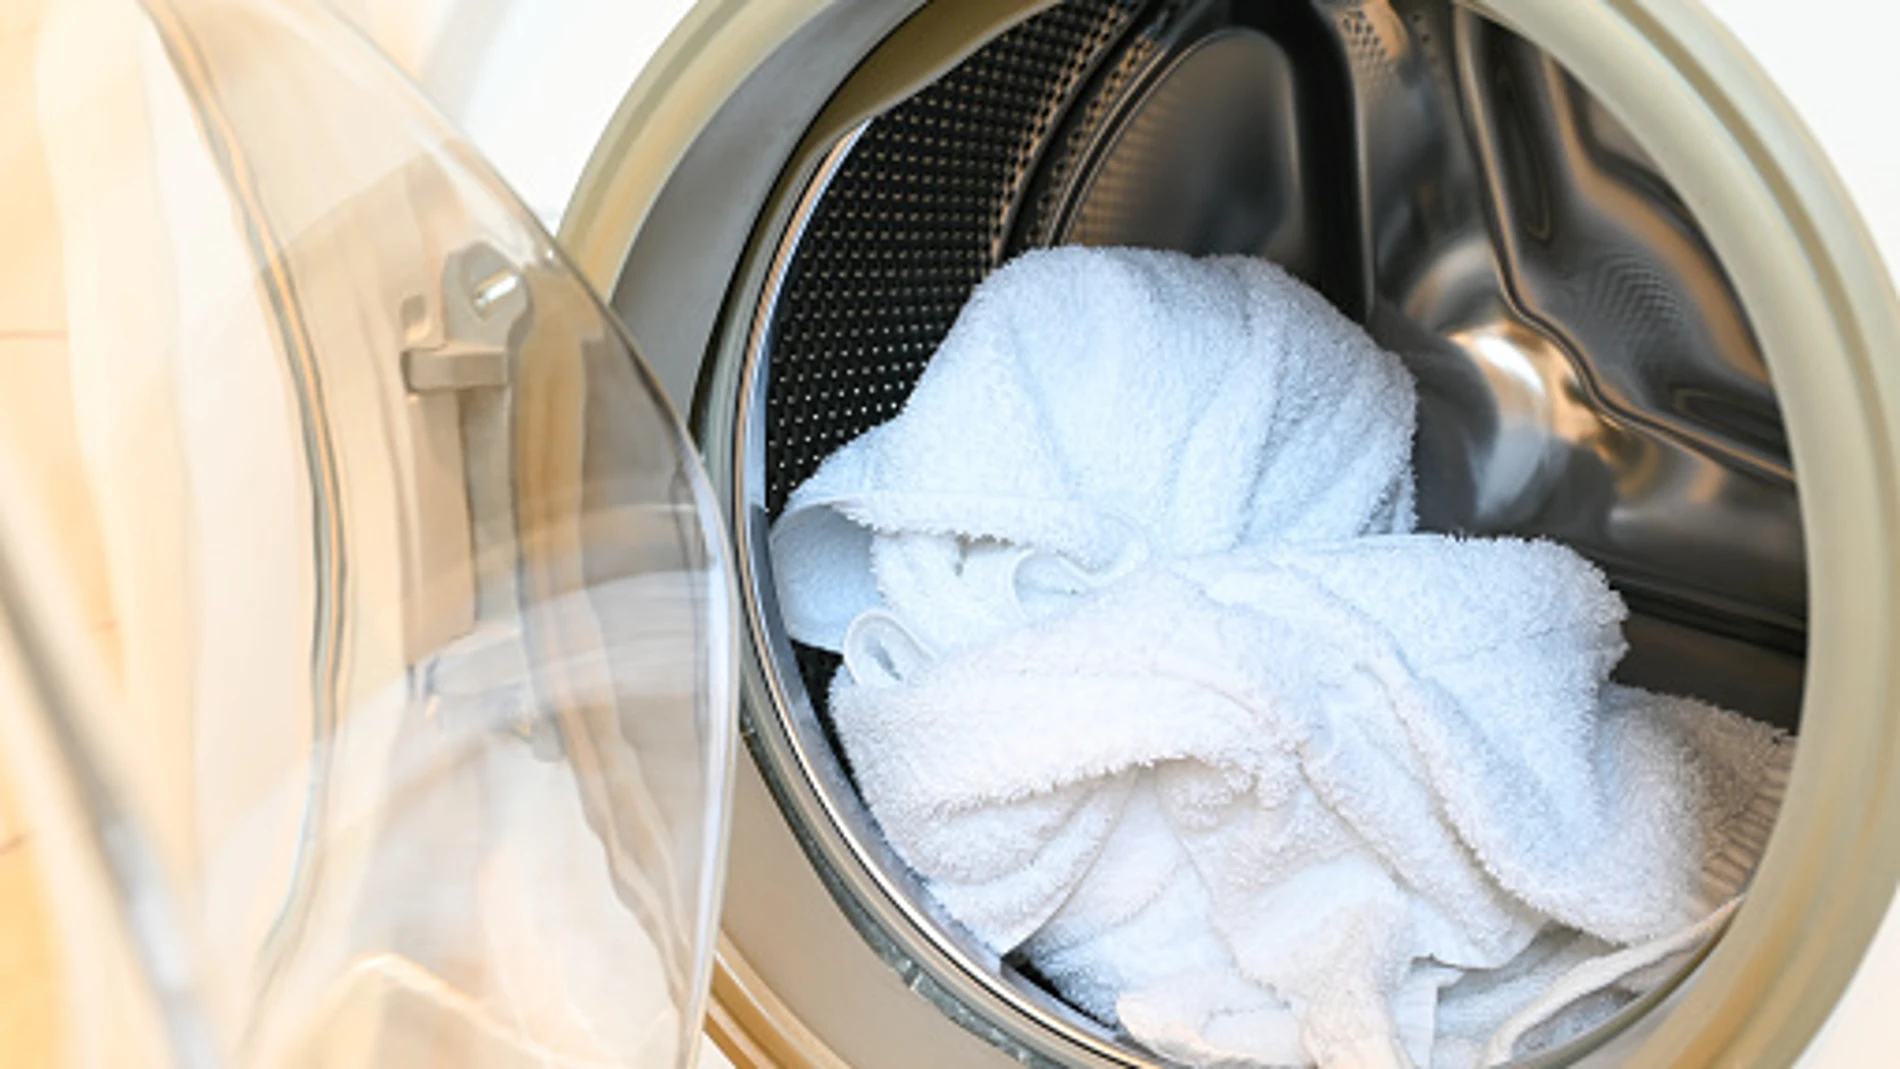 15 prendas que nunca debes meter en la lavadora para evitar daños